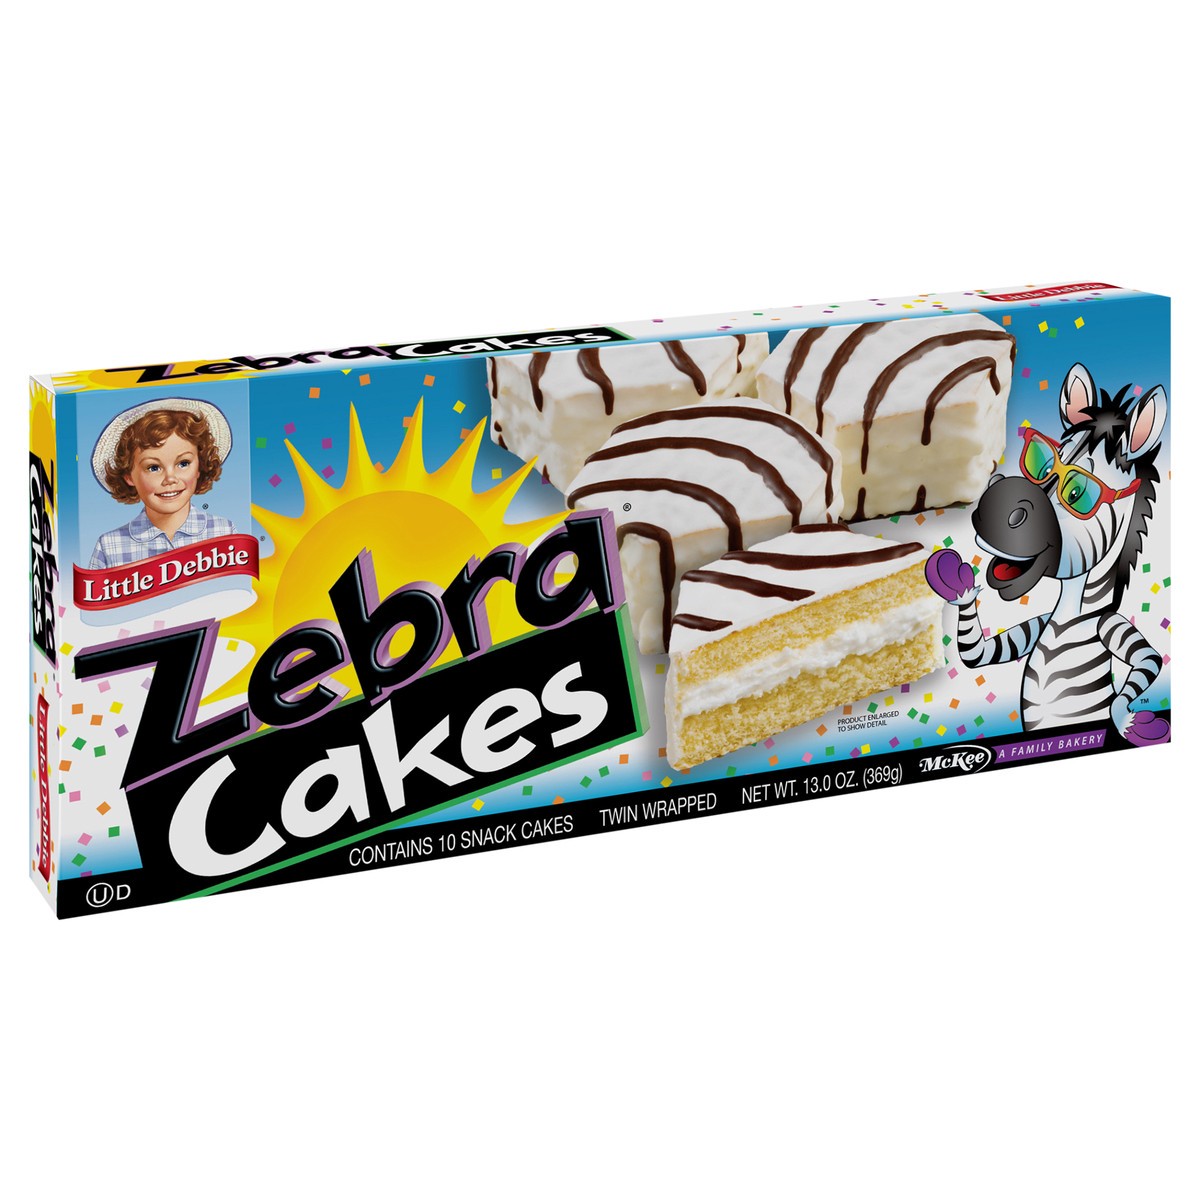 slide 2 of 9, Little Debbie Snack Cakes, Little Debbie Family Pack ZEBRA  cakes, 10 ct